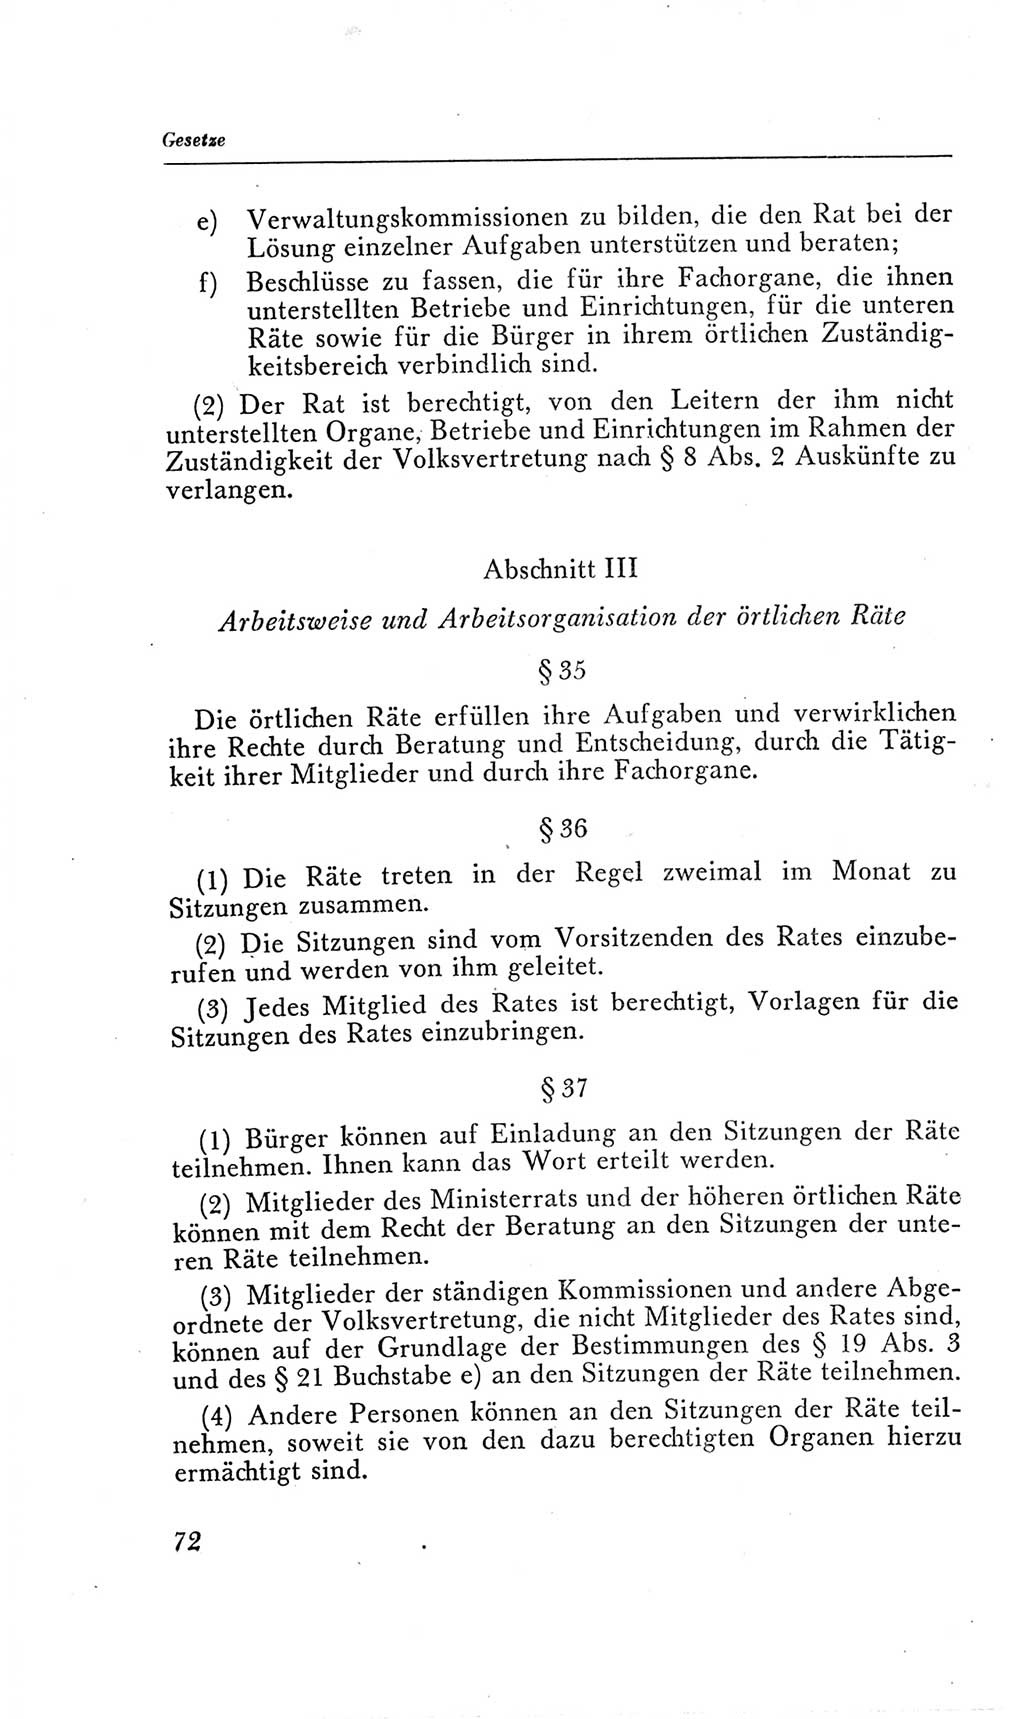 Handbuch der Volkskammer (VK) der Deutschen Demokratischen Republik (DDR), 2. Wahlperiode 1954-1958, Seite 72 (Hdb. VK. DDR, 2. WP. 1954-1958, S. 72)